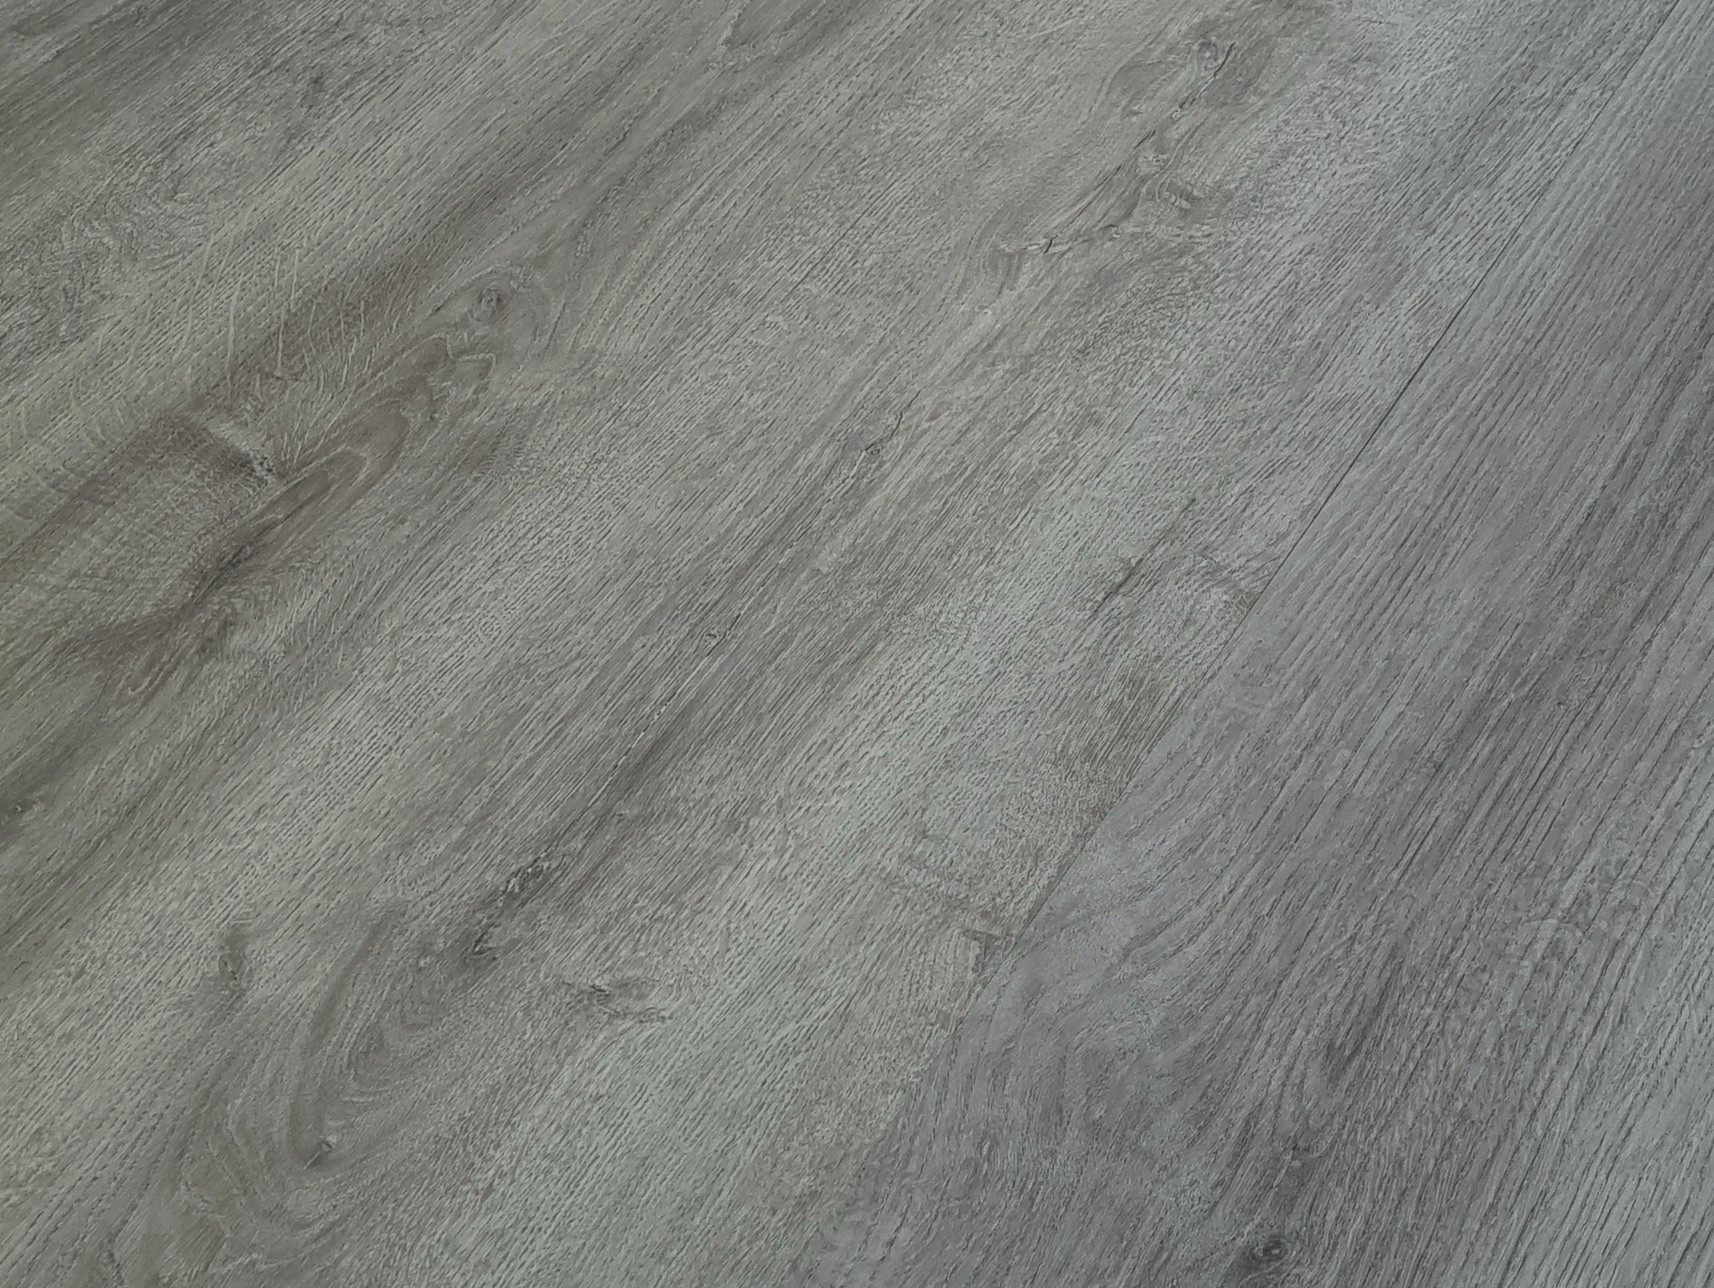 Podlaha vinylová lepená Home XL gobi desert oak grey KPP